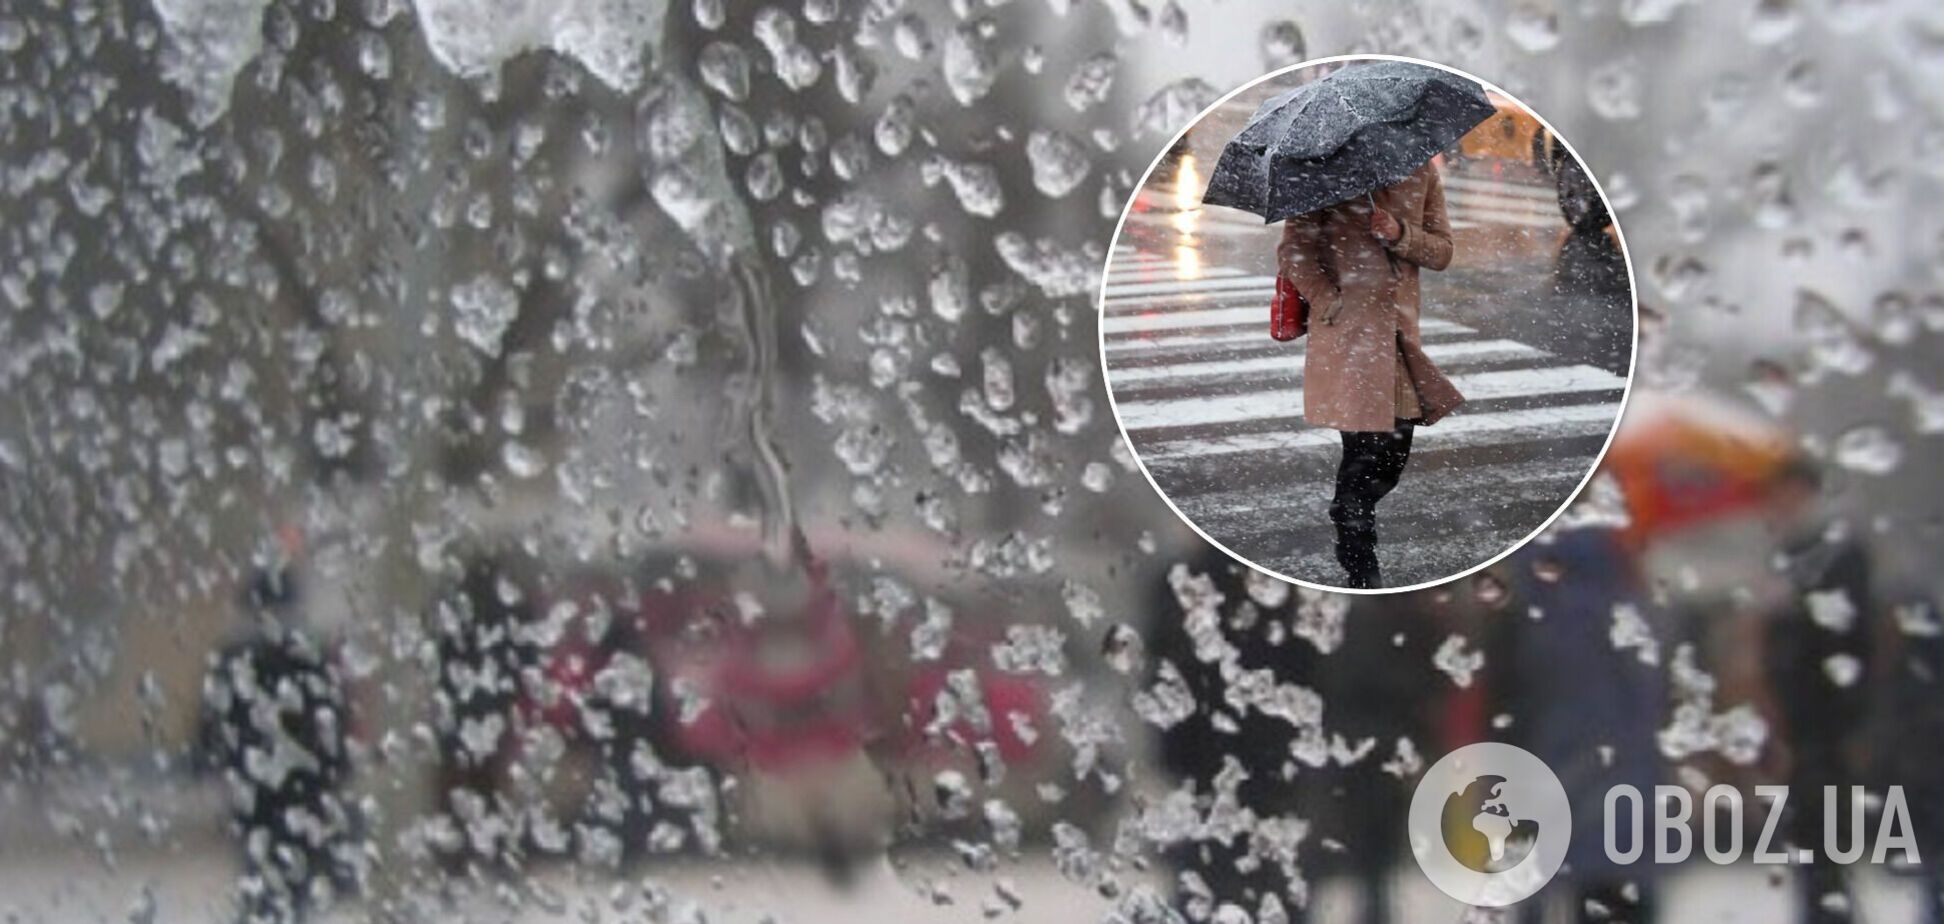 Тепло до +15 и мокрый снег: синоптики дали контрастный прогноз погоды на выходные в Украине